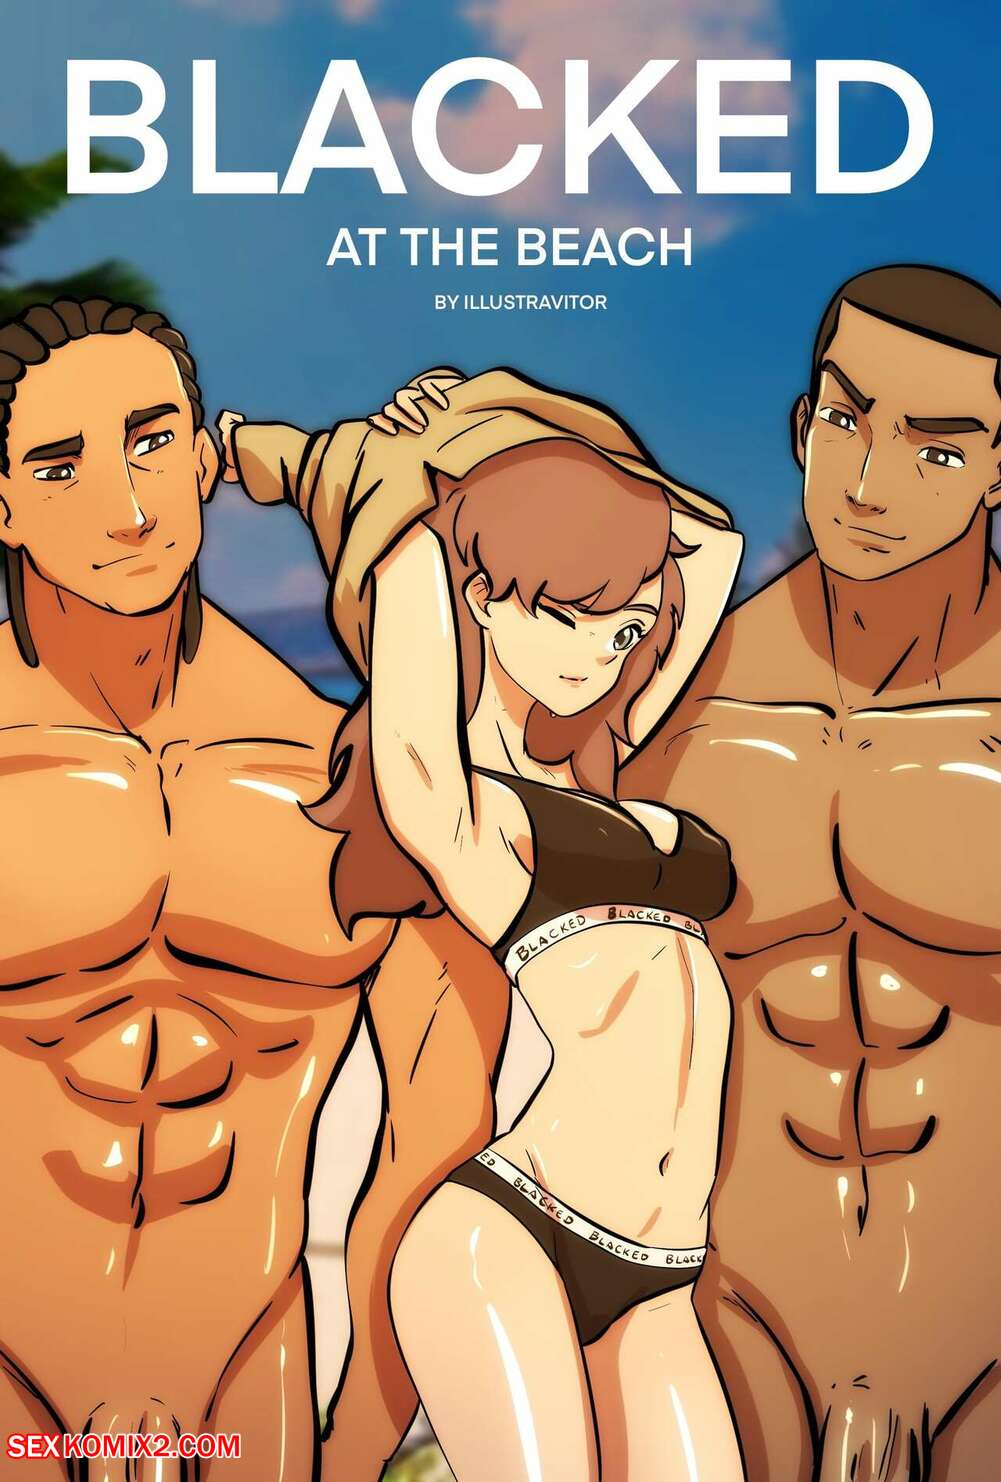 Blasked - âœ…ï¸ Porn comic Blacked at the Beach. Illustravitor Sex comic hot busty  brunette âœ…ï¸ | | Porn comics hentai adult only | wporncomics.com